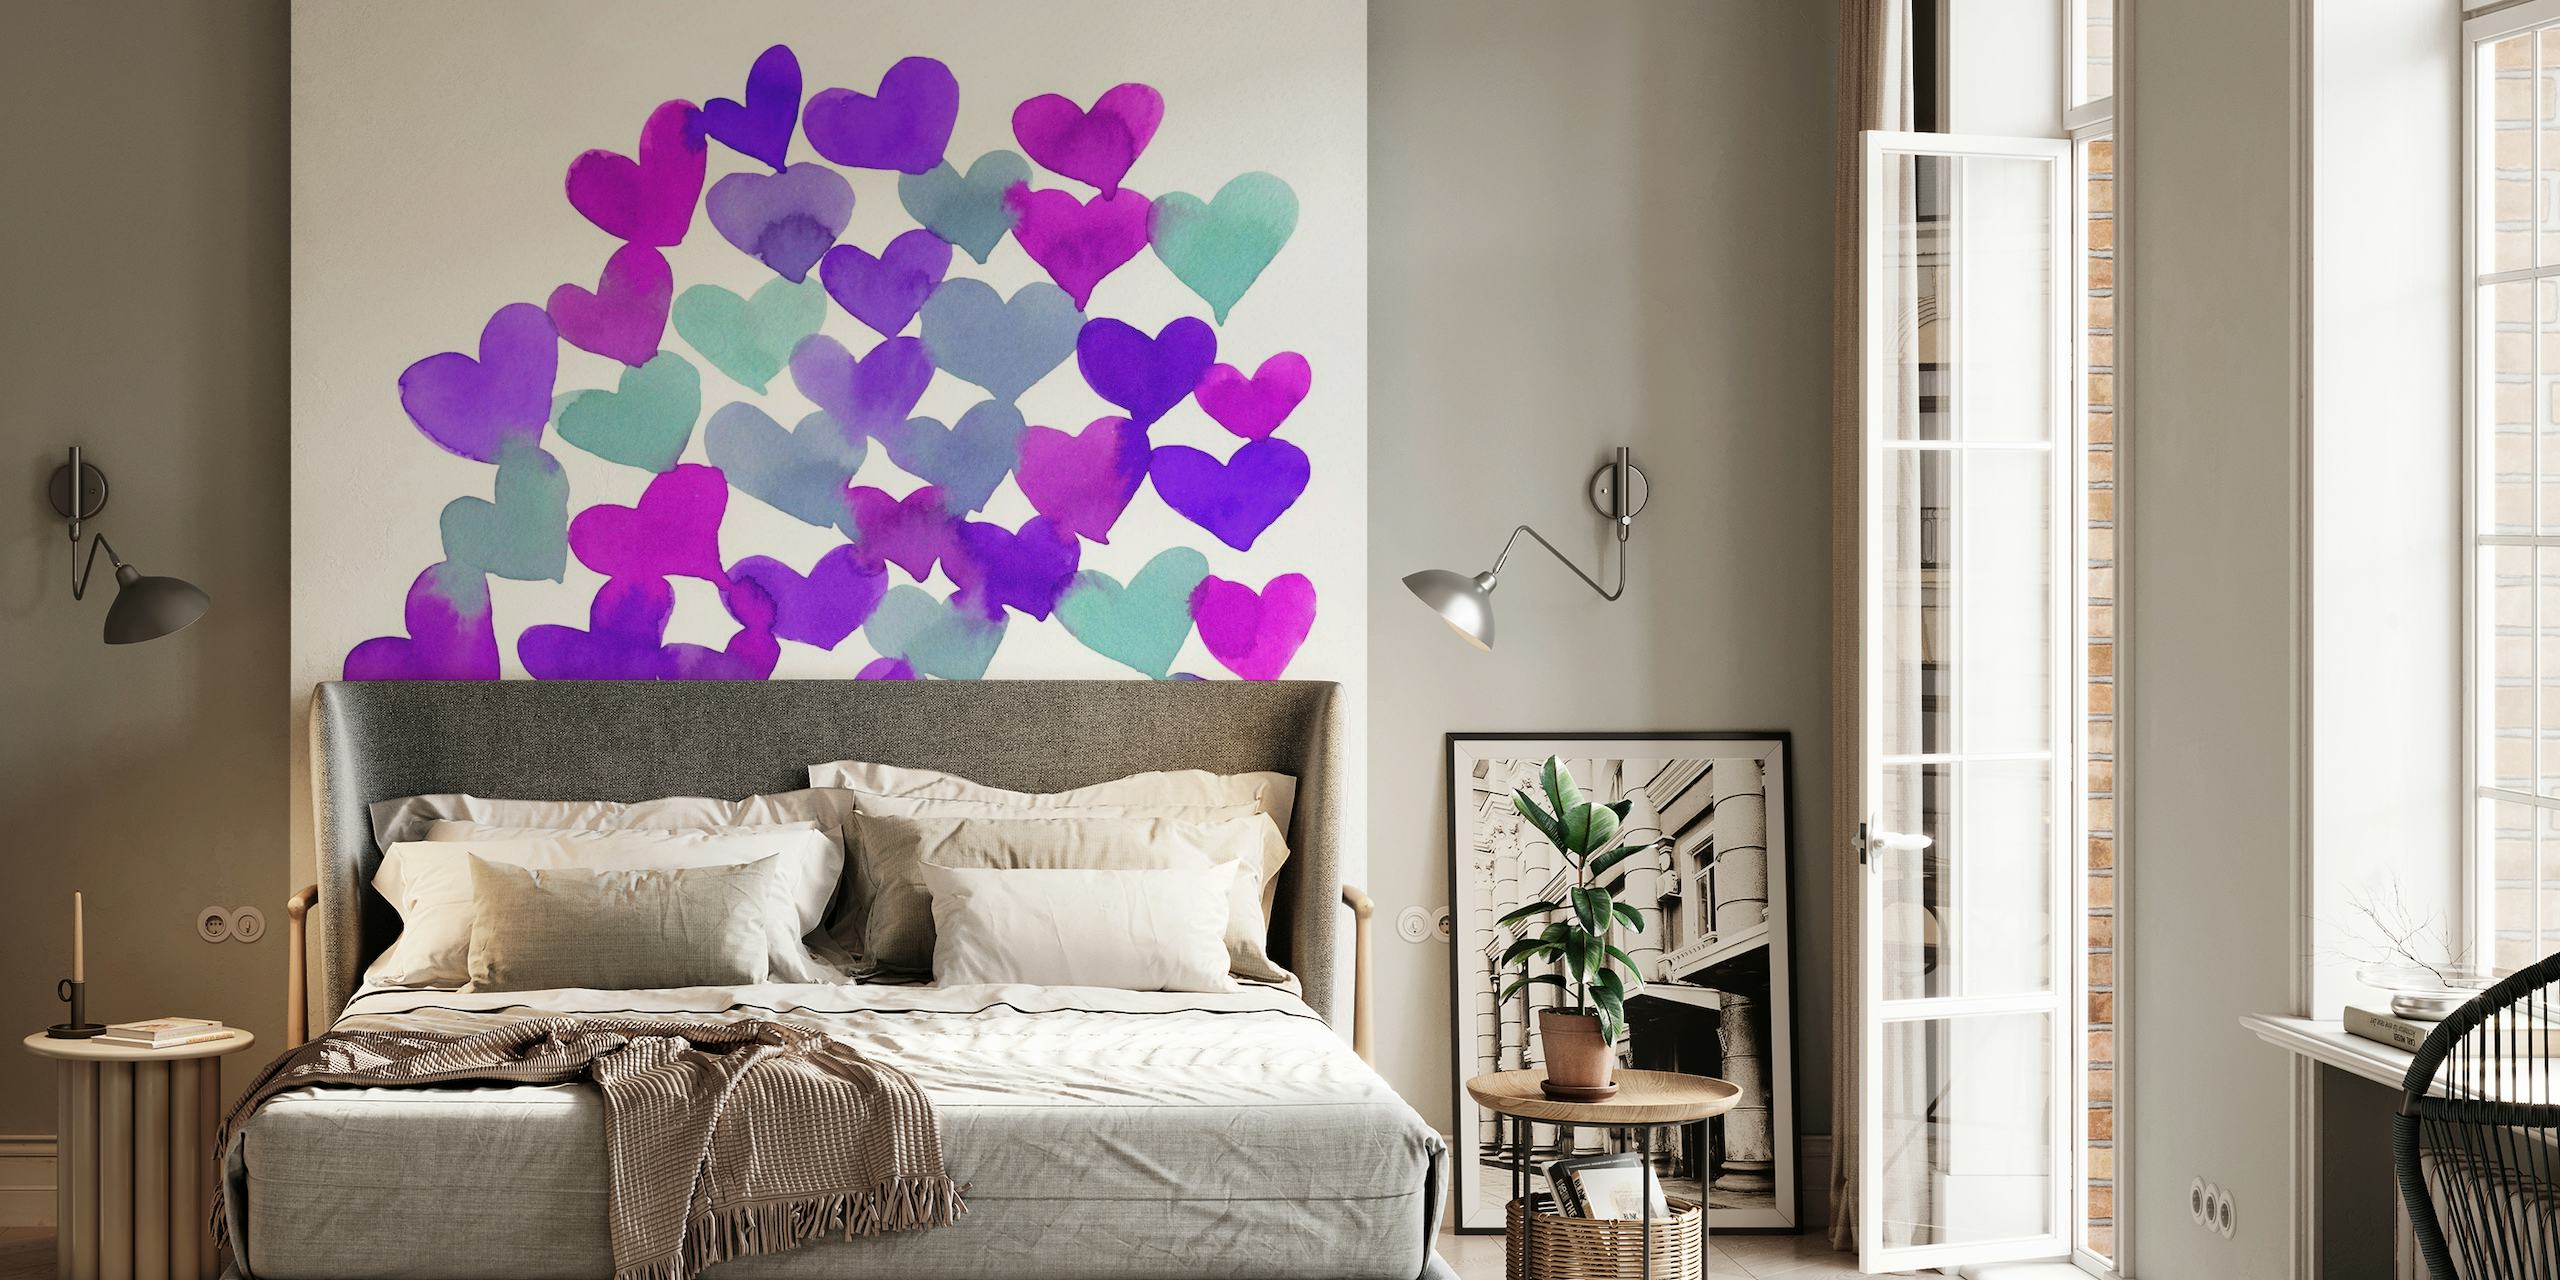 Melting hearts aqua and purple wallpaper